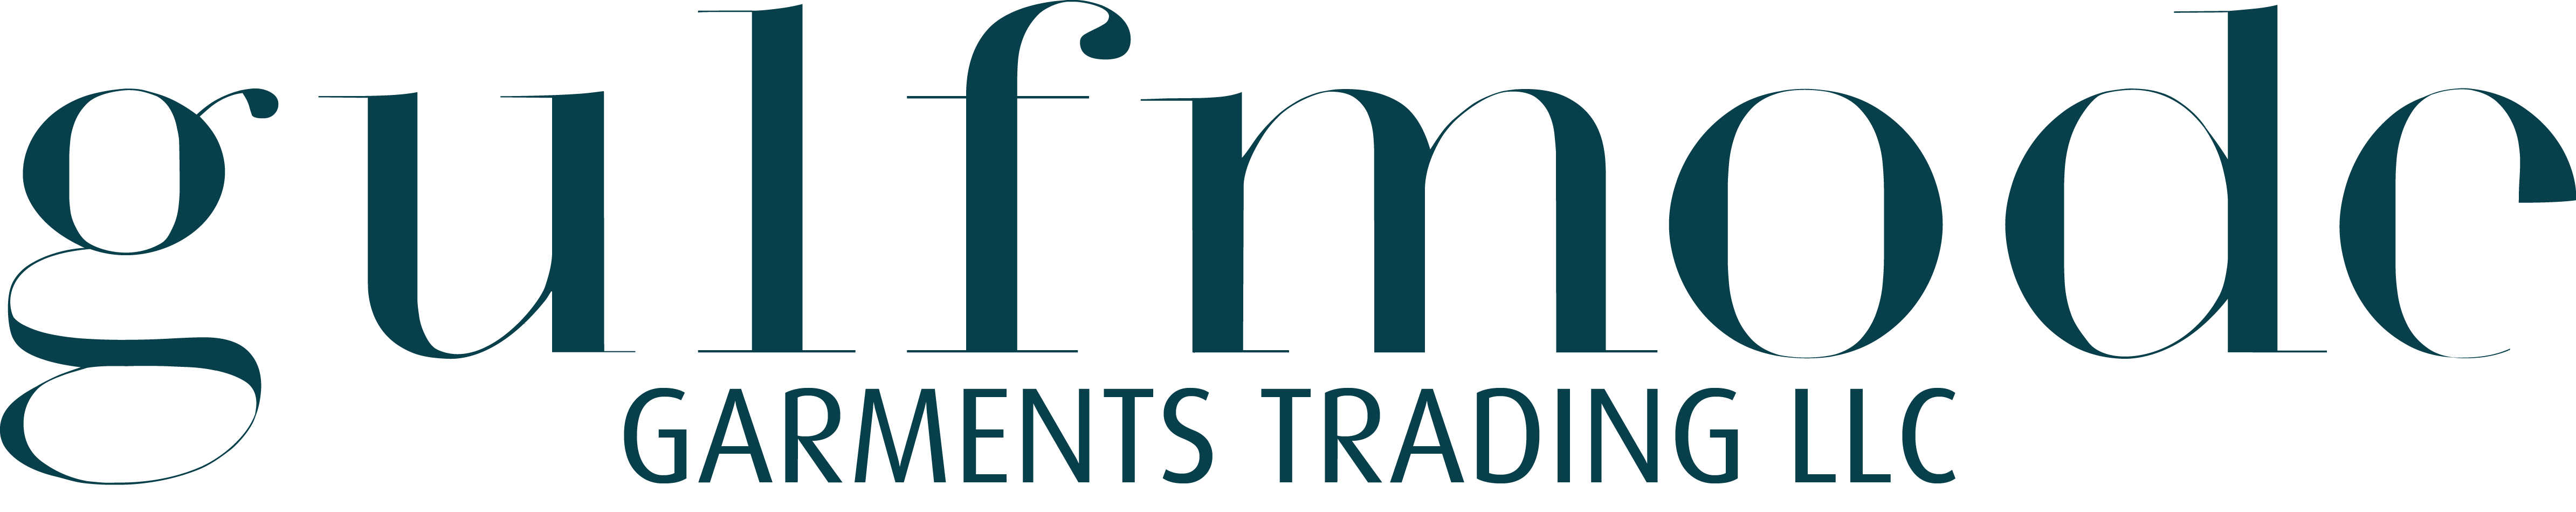 Gulfmode Garments Trading LLC